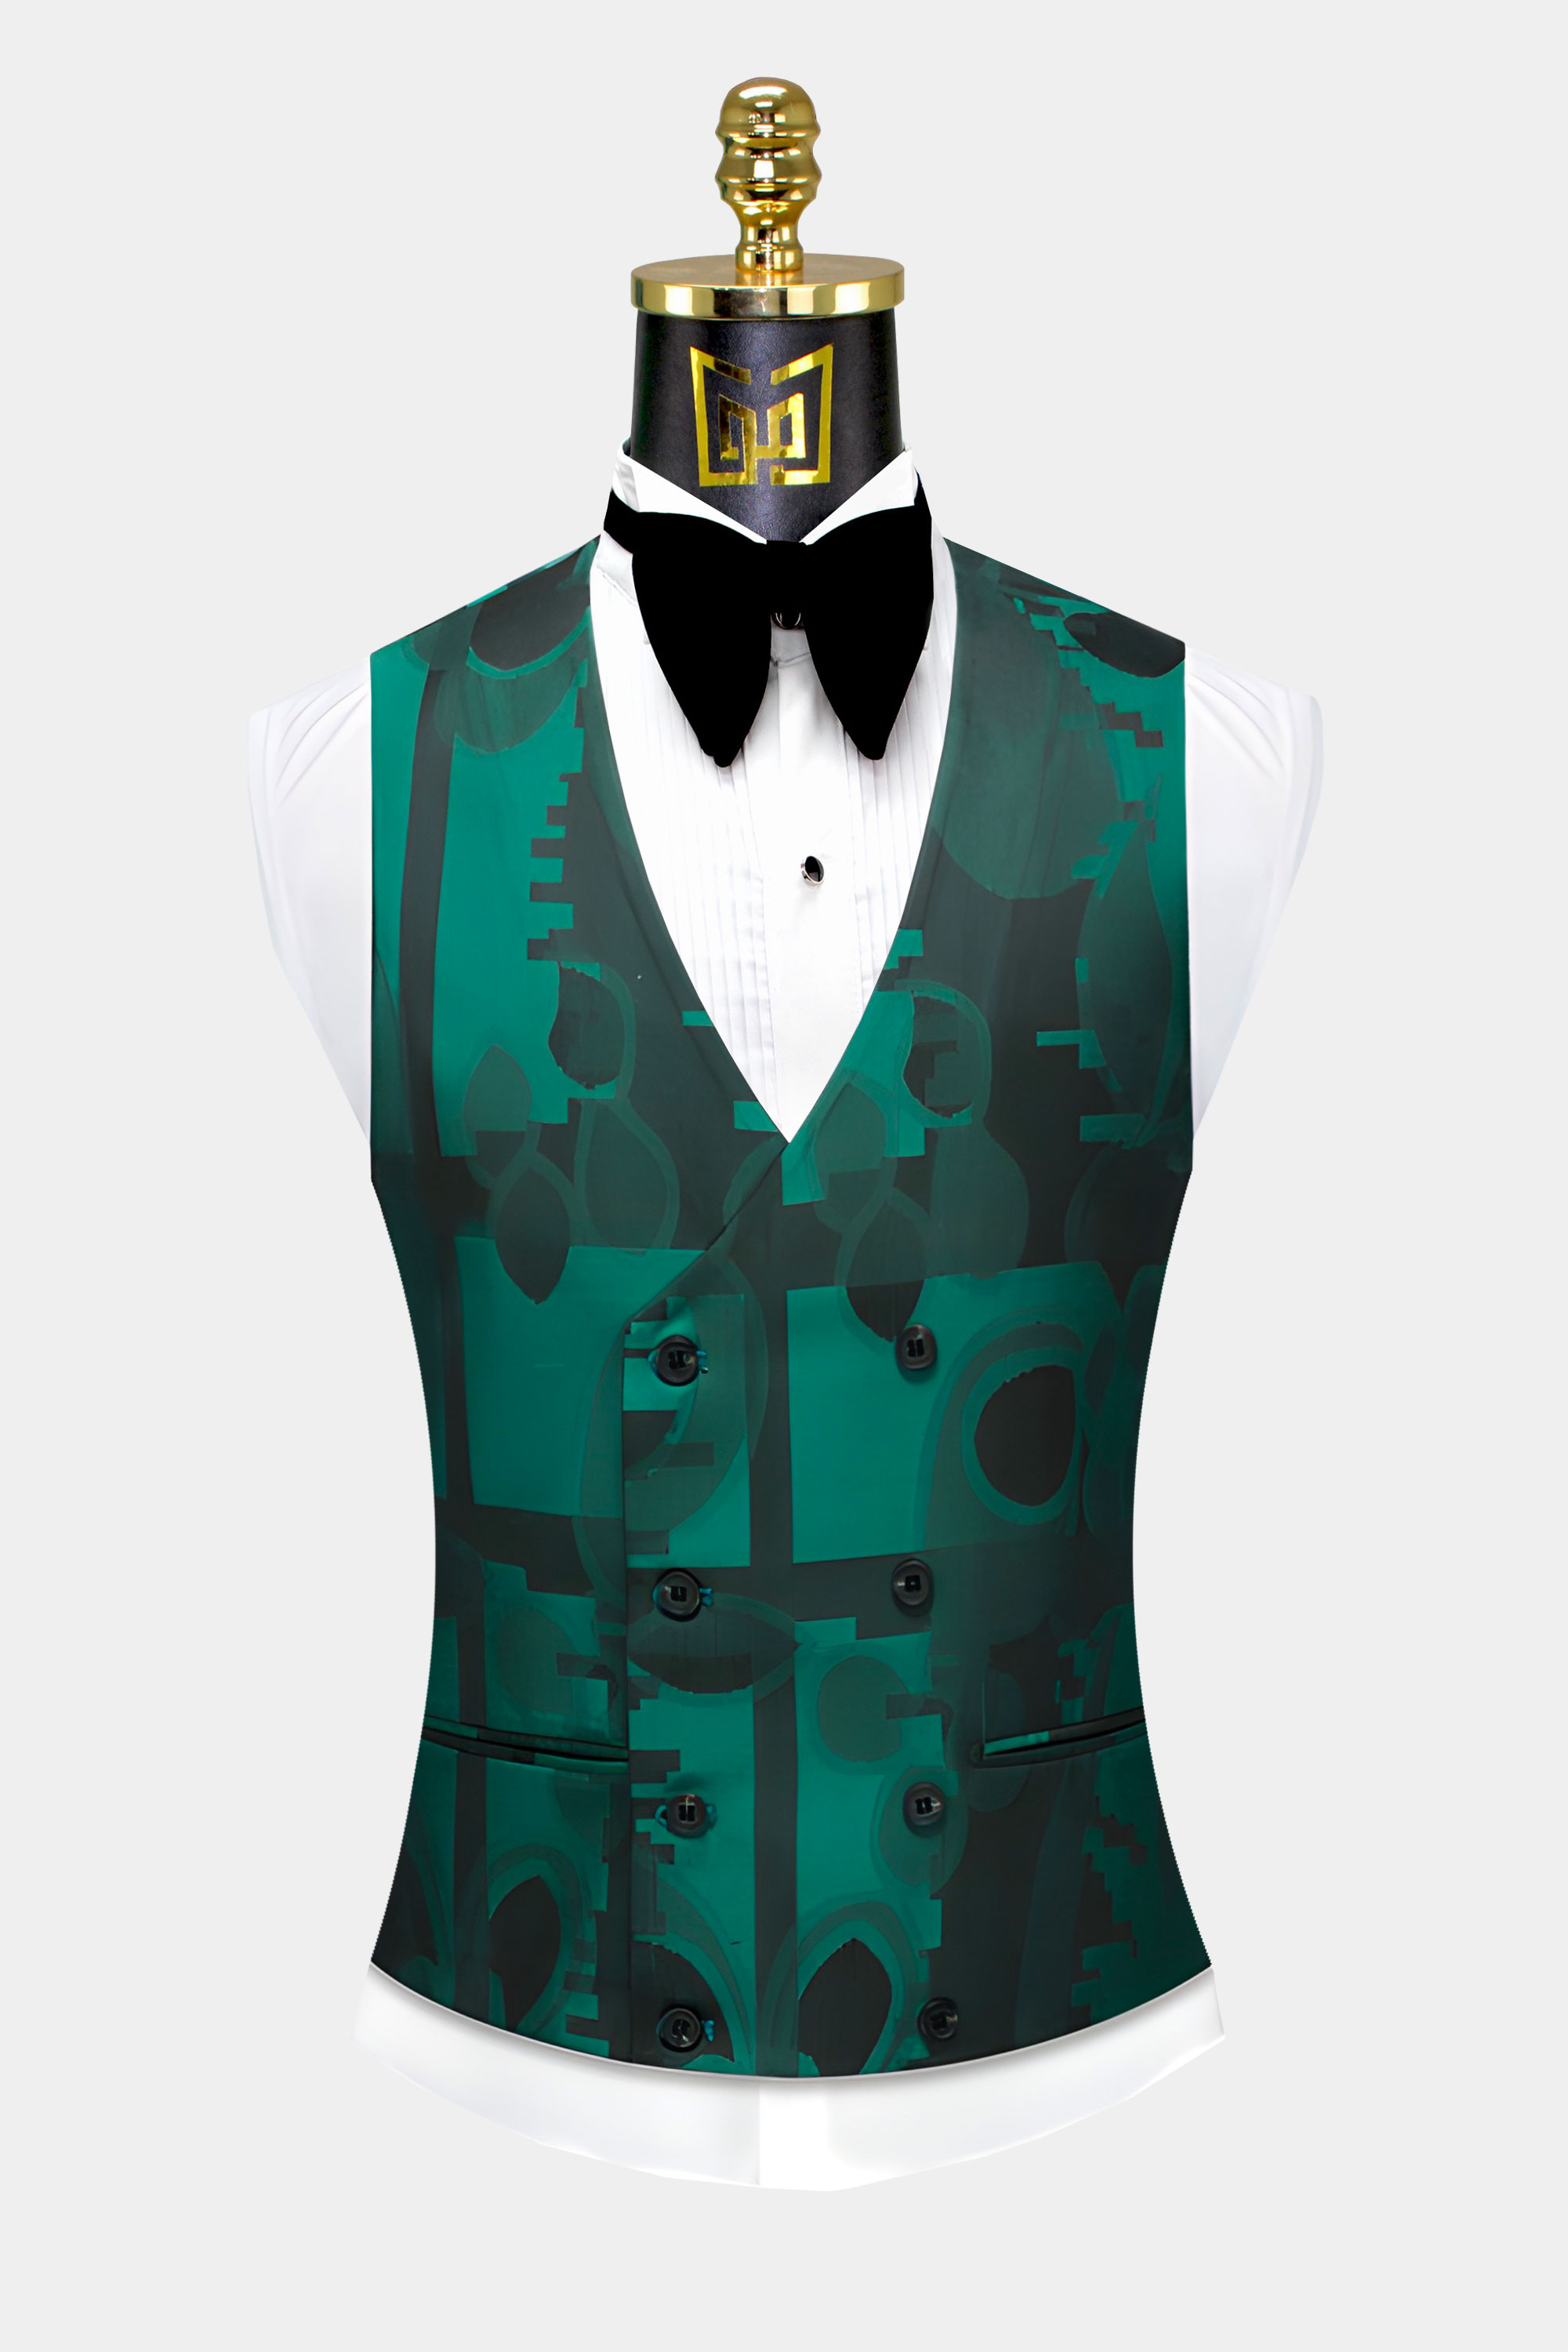 Green-and-Black-Suit-Vest-from-Gentlemansguru.com